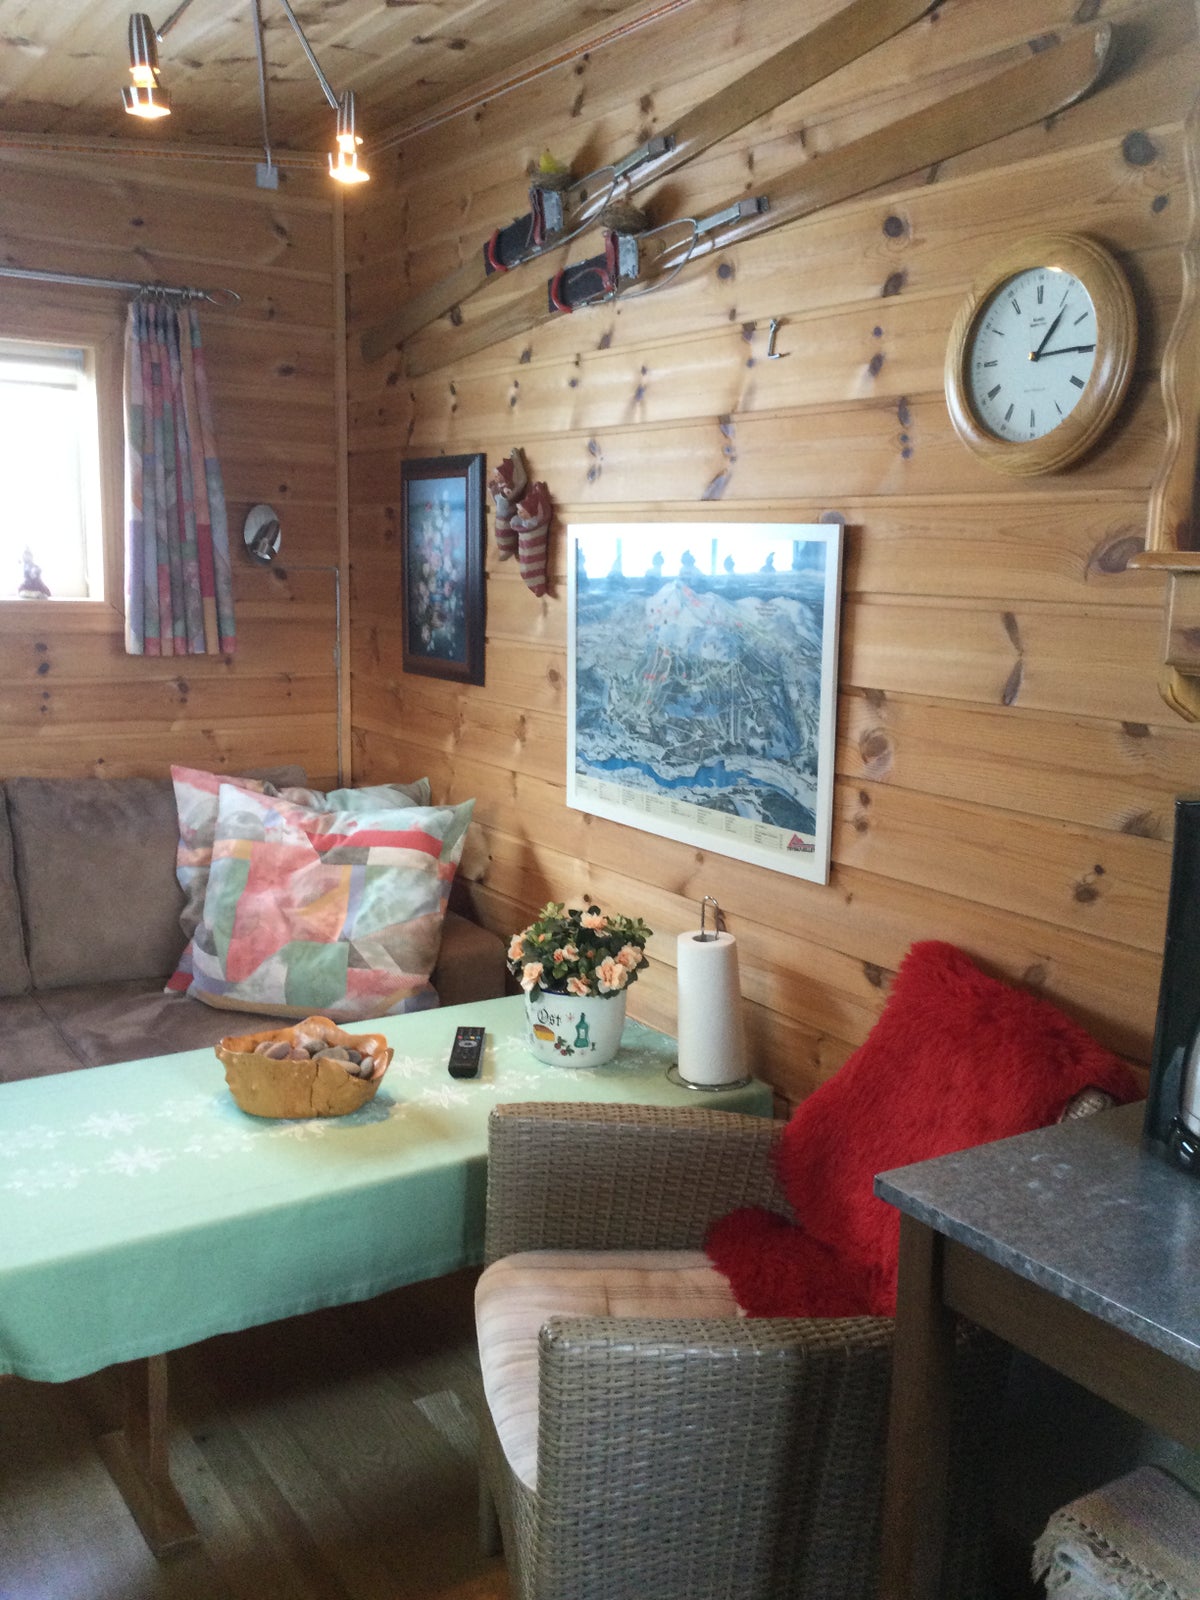 Campingvogn og hytte i Norge.